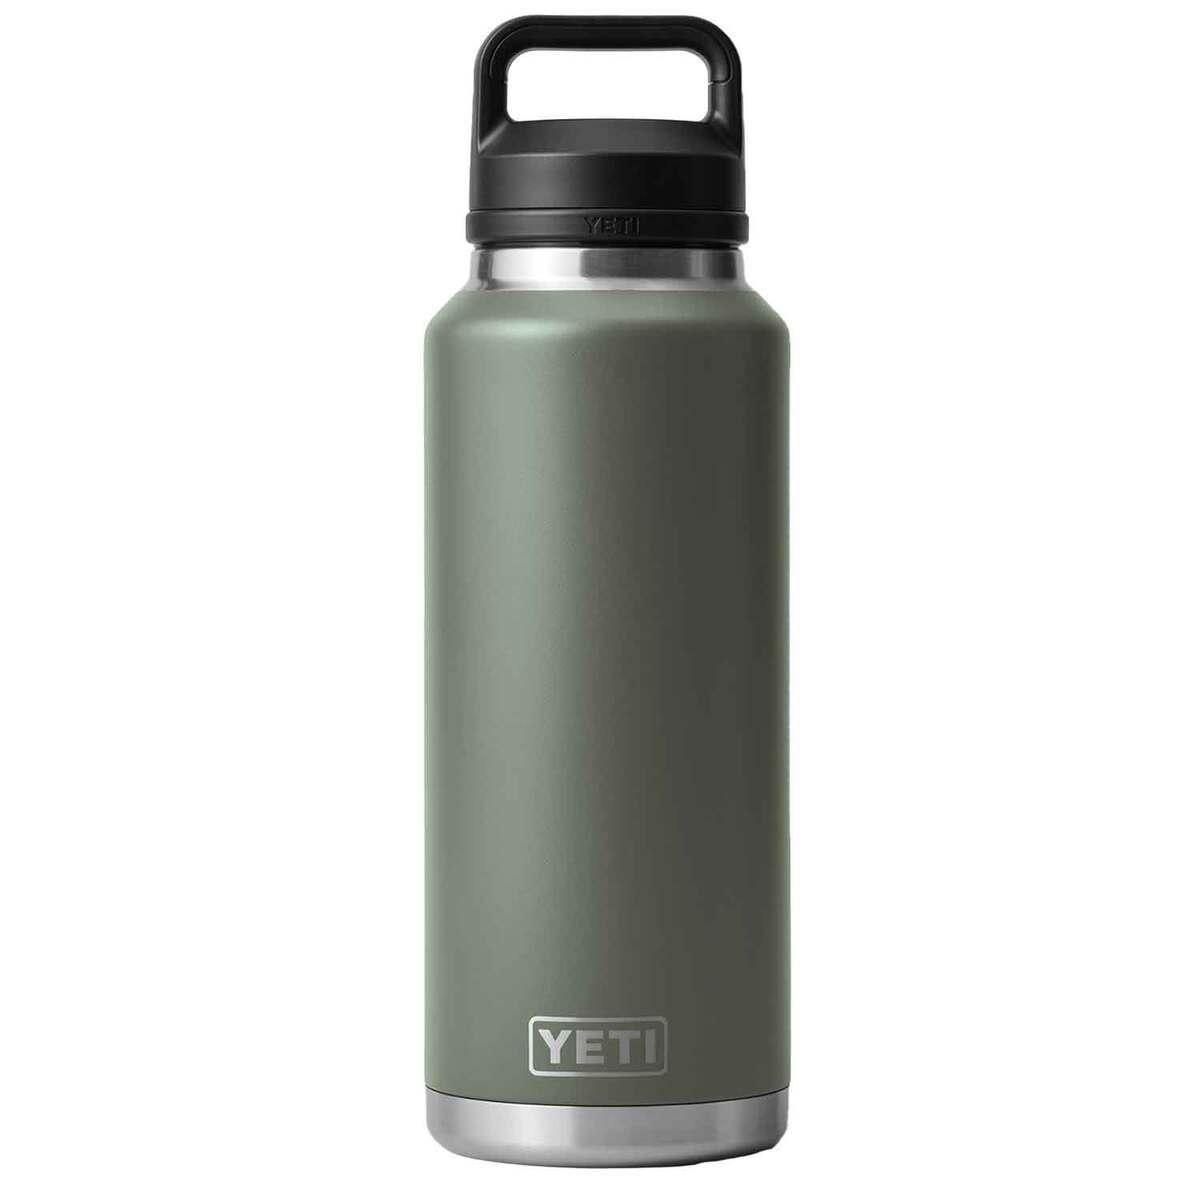 https://www.sportsmans.com/medias/yeti-rambler-46oz-wide-mouth-insulated-bottle-with-chug-cap-camp-green-1825960-1.jpg?context=bWFzdGVyfGltYWdlc3wyNTk4NnxpbWFnZS9qcGVnfGhhMi9oZTgvMTE0ODk3NTIzNTA3NTAvMTIwMC1jb252ZXJzaW9uRm9ybWF0X2Jhc2UtY29udmVyc2lvbkZvcm1hdF9zbXctMTgyNTk2MC0xLmpwZ3w5MGM1MTM4MGQyZGNhYWQ3YjczODAxMGJlYzkwMDcxZTc1YTY5ZGZmN2NkN2FkYjllODMxNzU2ZDFiNDJhZjE4